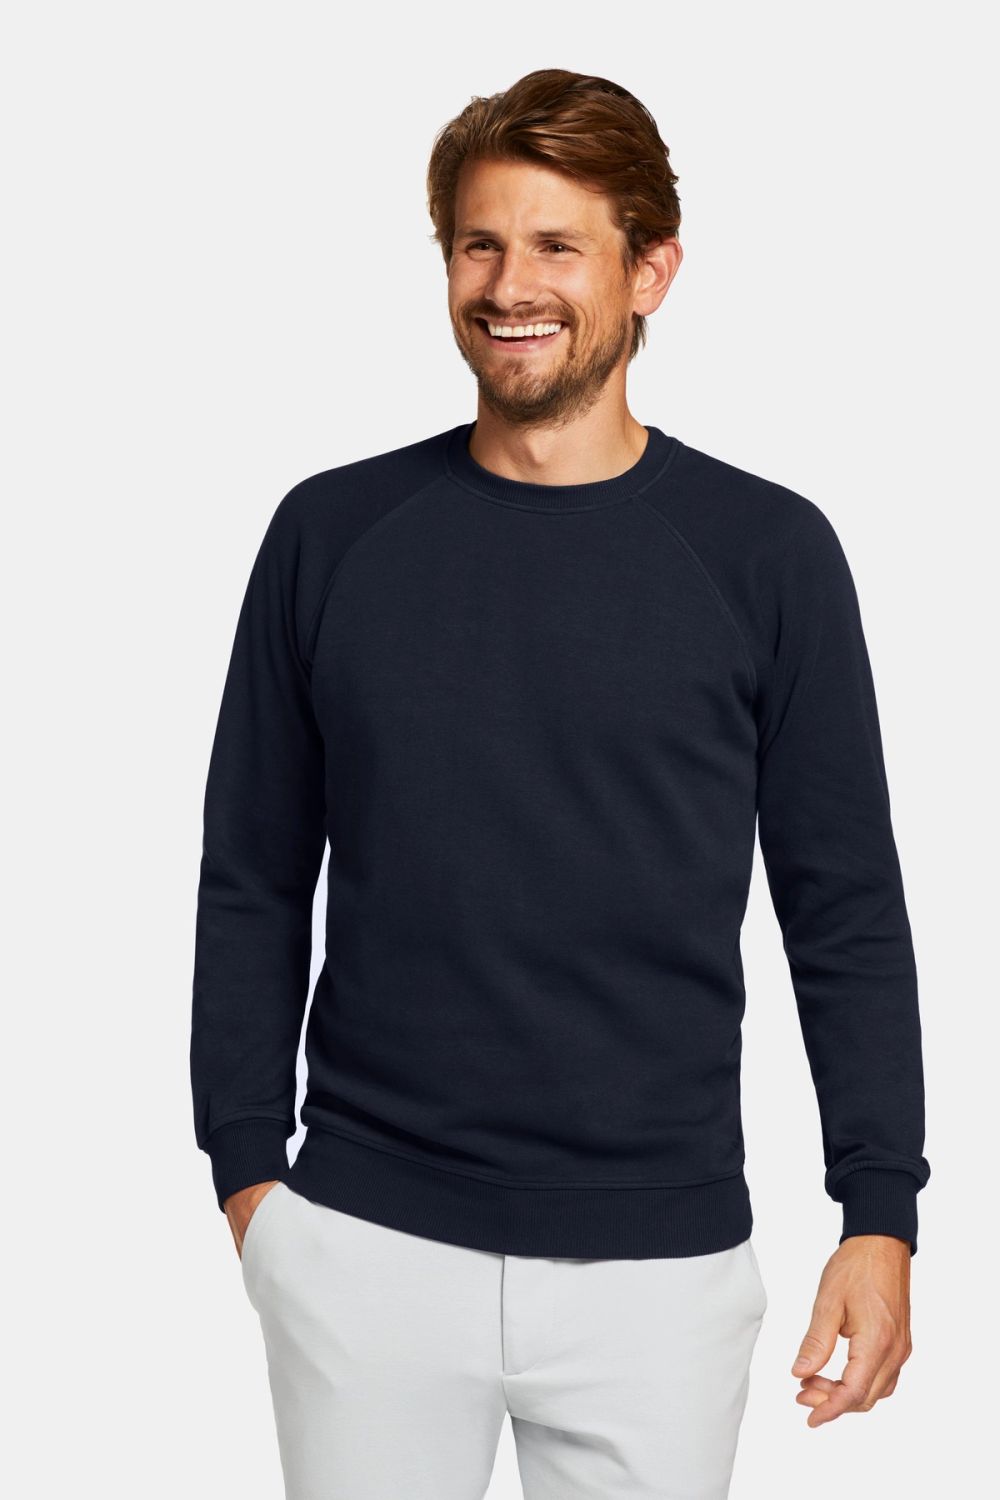 Cosmics * The Easy Sweater